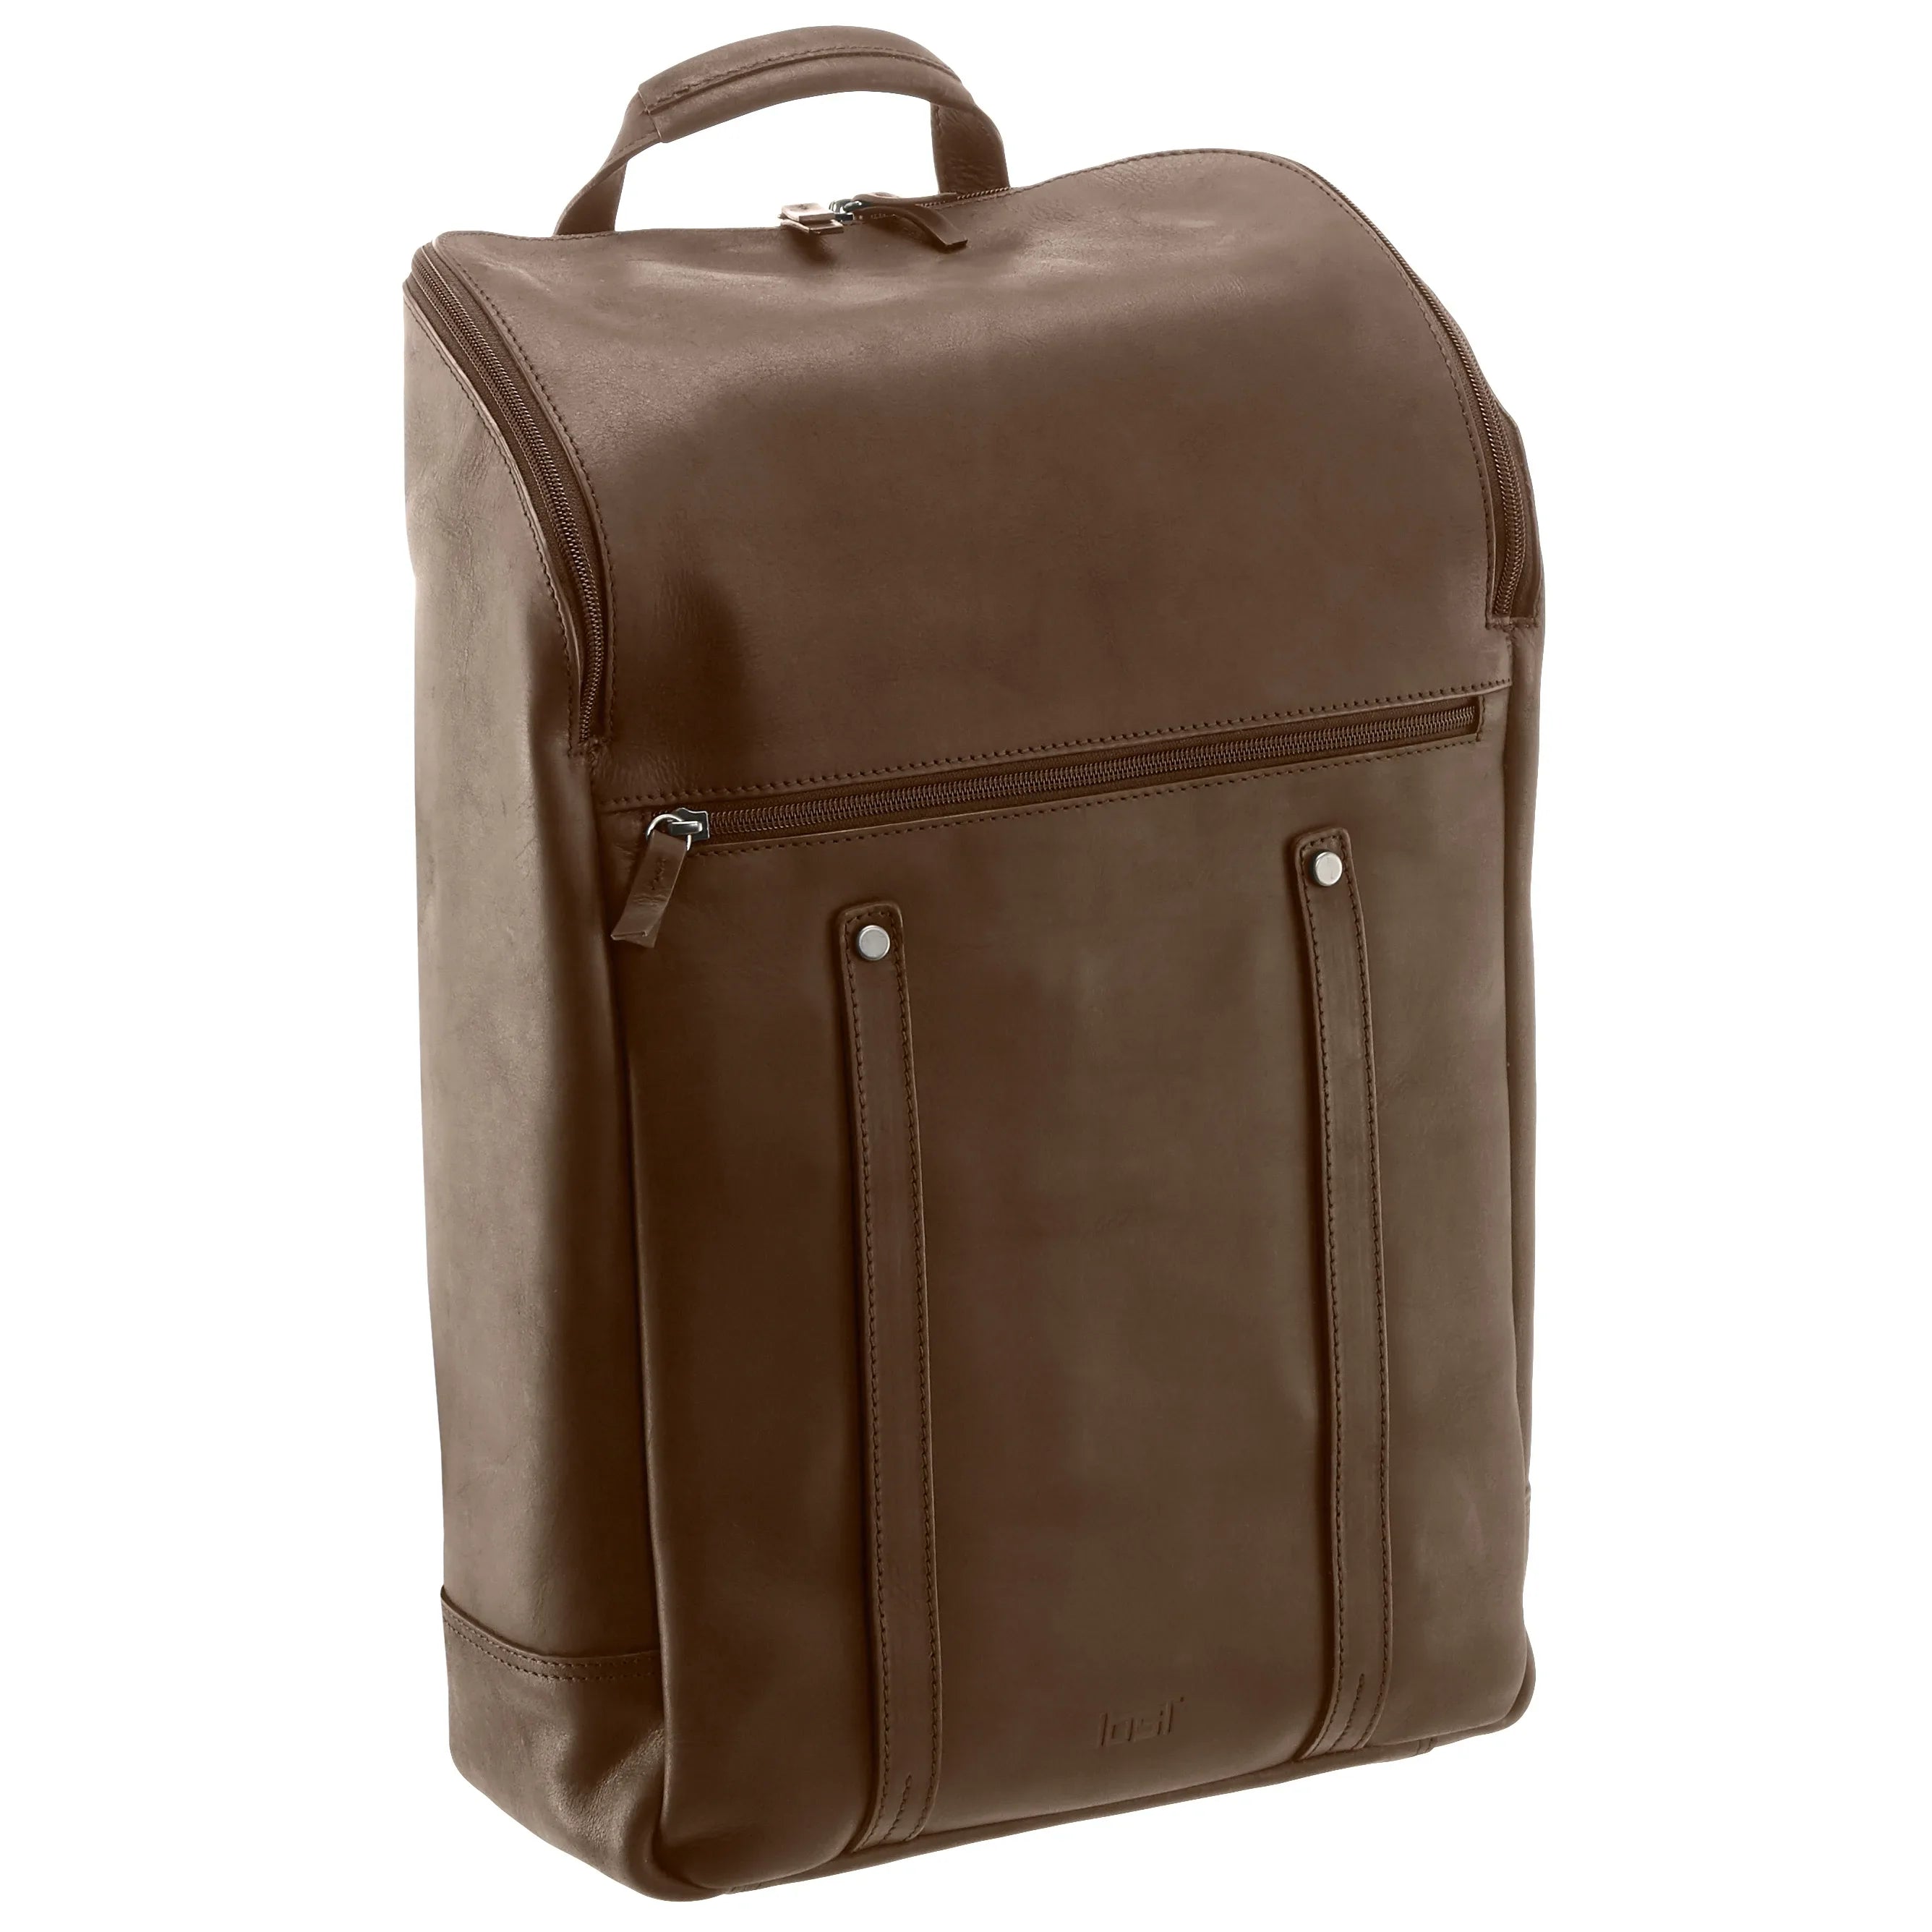 Jost Salo sac à dos pour ordinateur portable 45 cm - marron